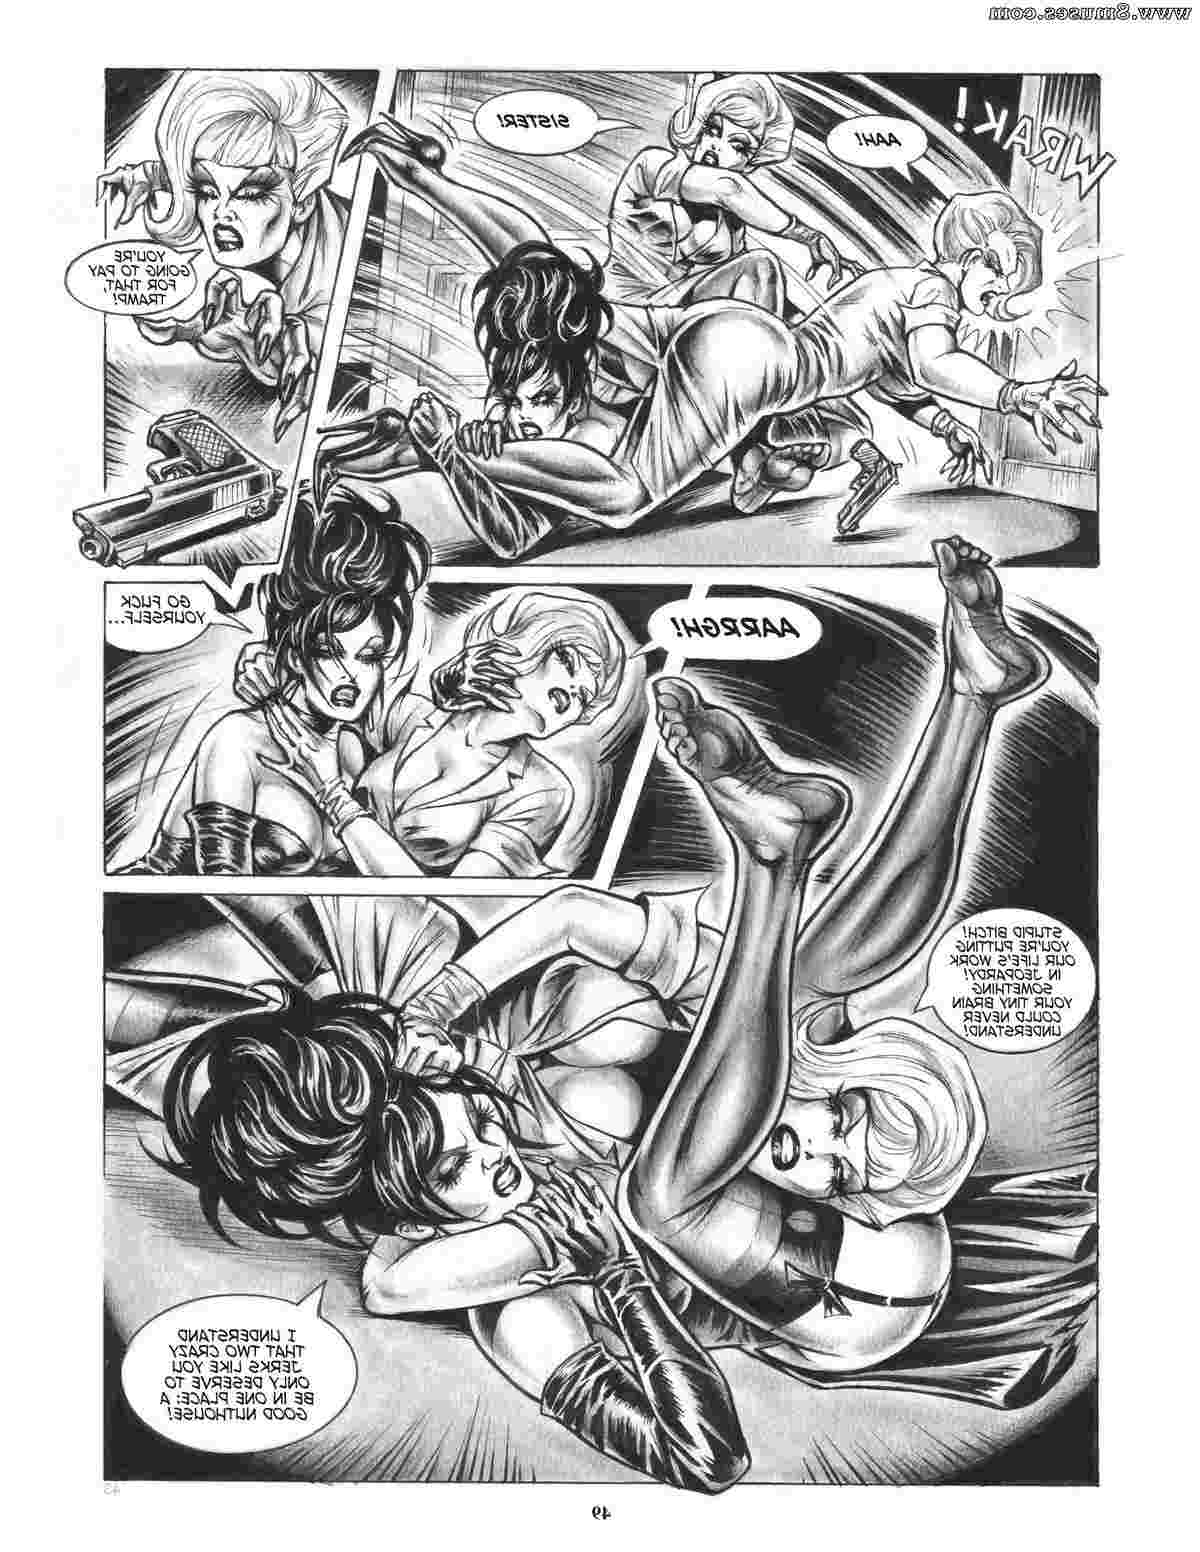 Nicola-Guerra-Comics/Noir-Fatale Noir_Fatale__8muses_-_Sex_and_Porn_Comics_48.jpg